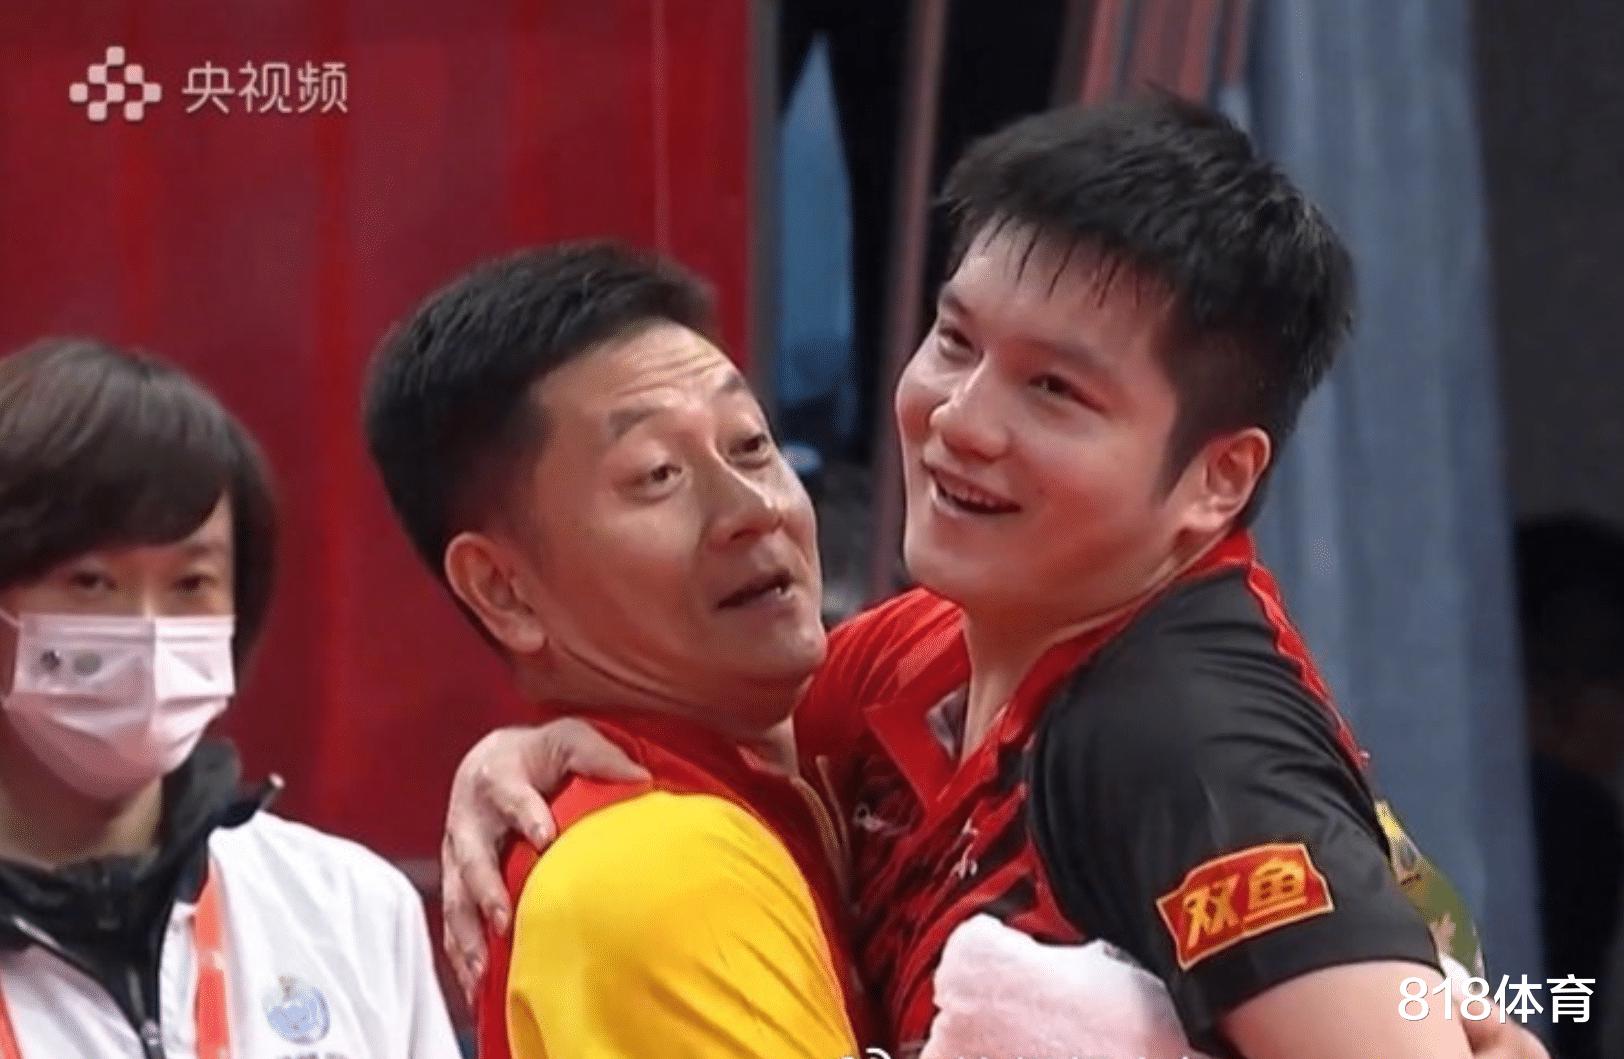 挺举失败! 樊振东夺冠教练尝试抱起他庆祝, 似乎抱起又没完全抱起来(6)